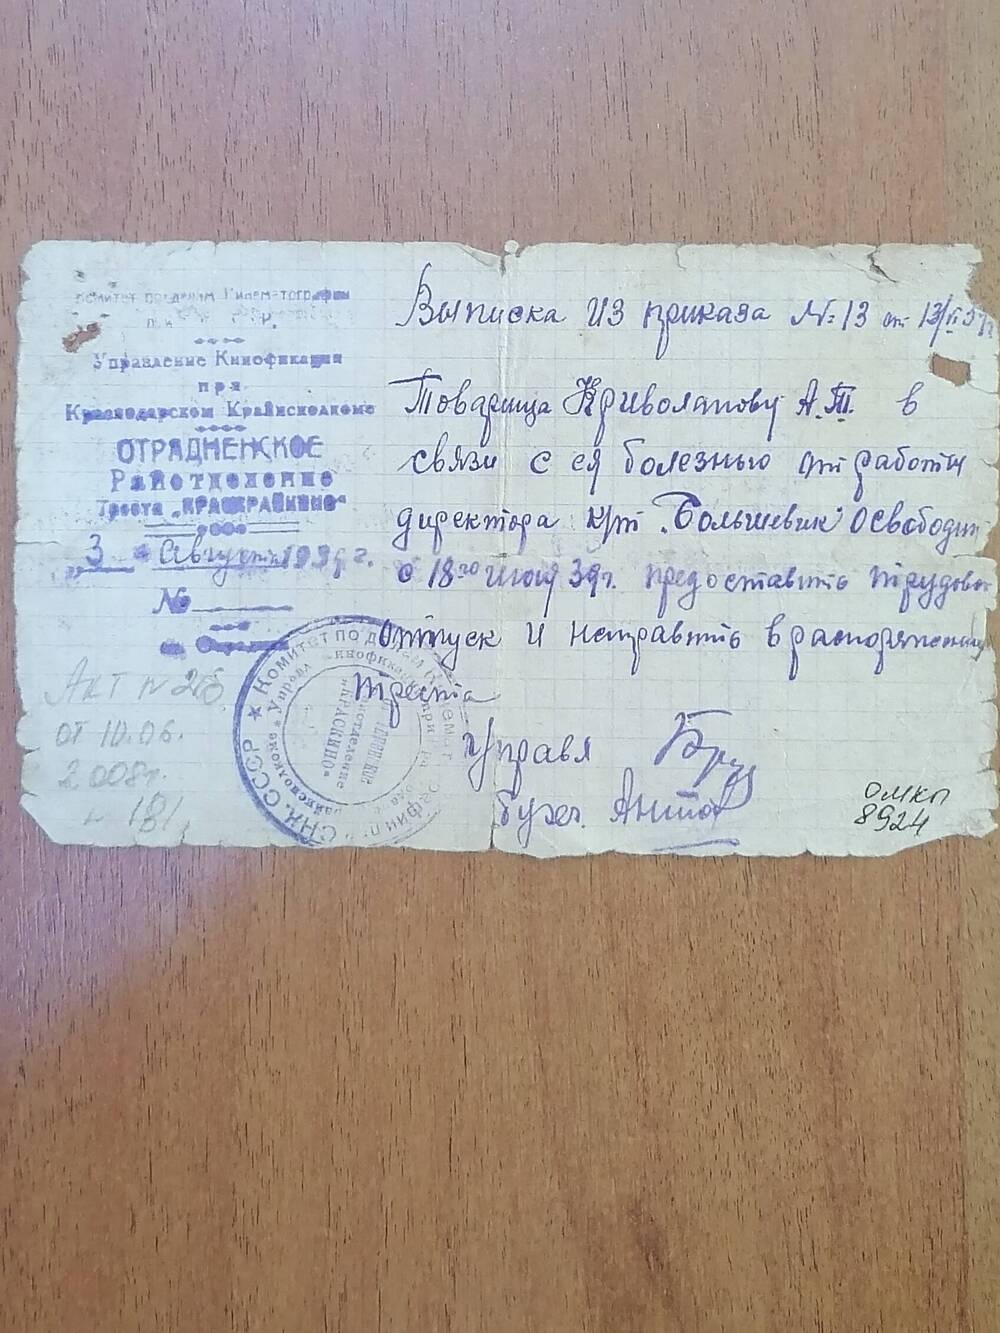 Выписка из приказа № 13 о предоставлении трудового отпуска Криволаповой А.Т.